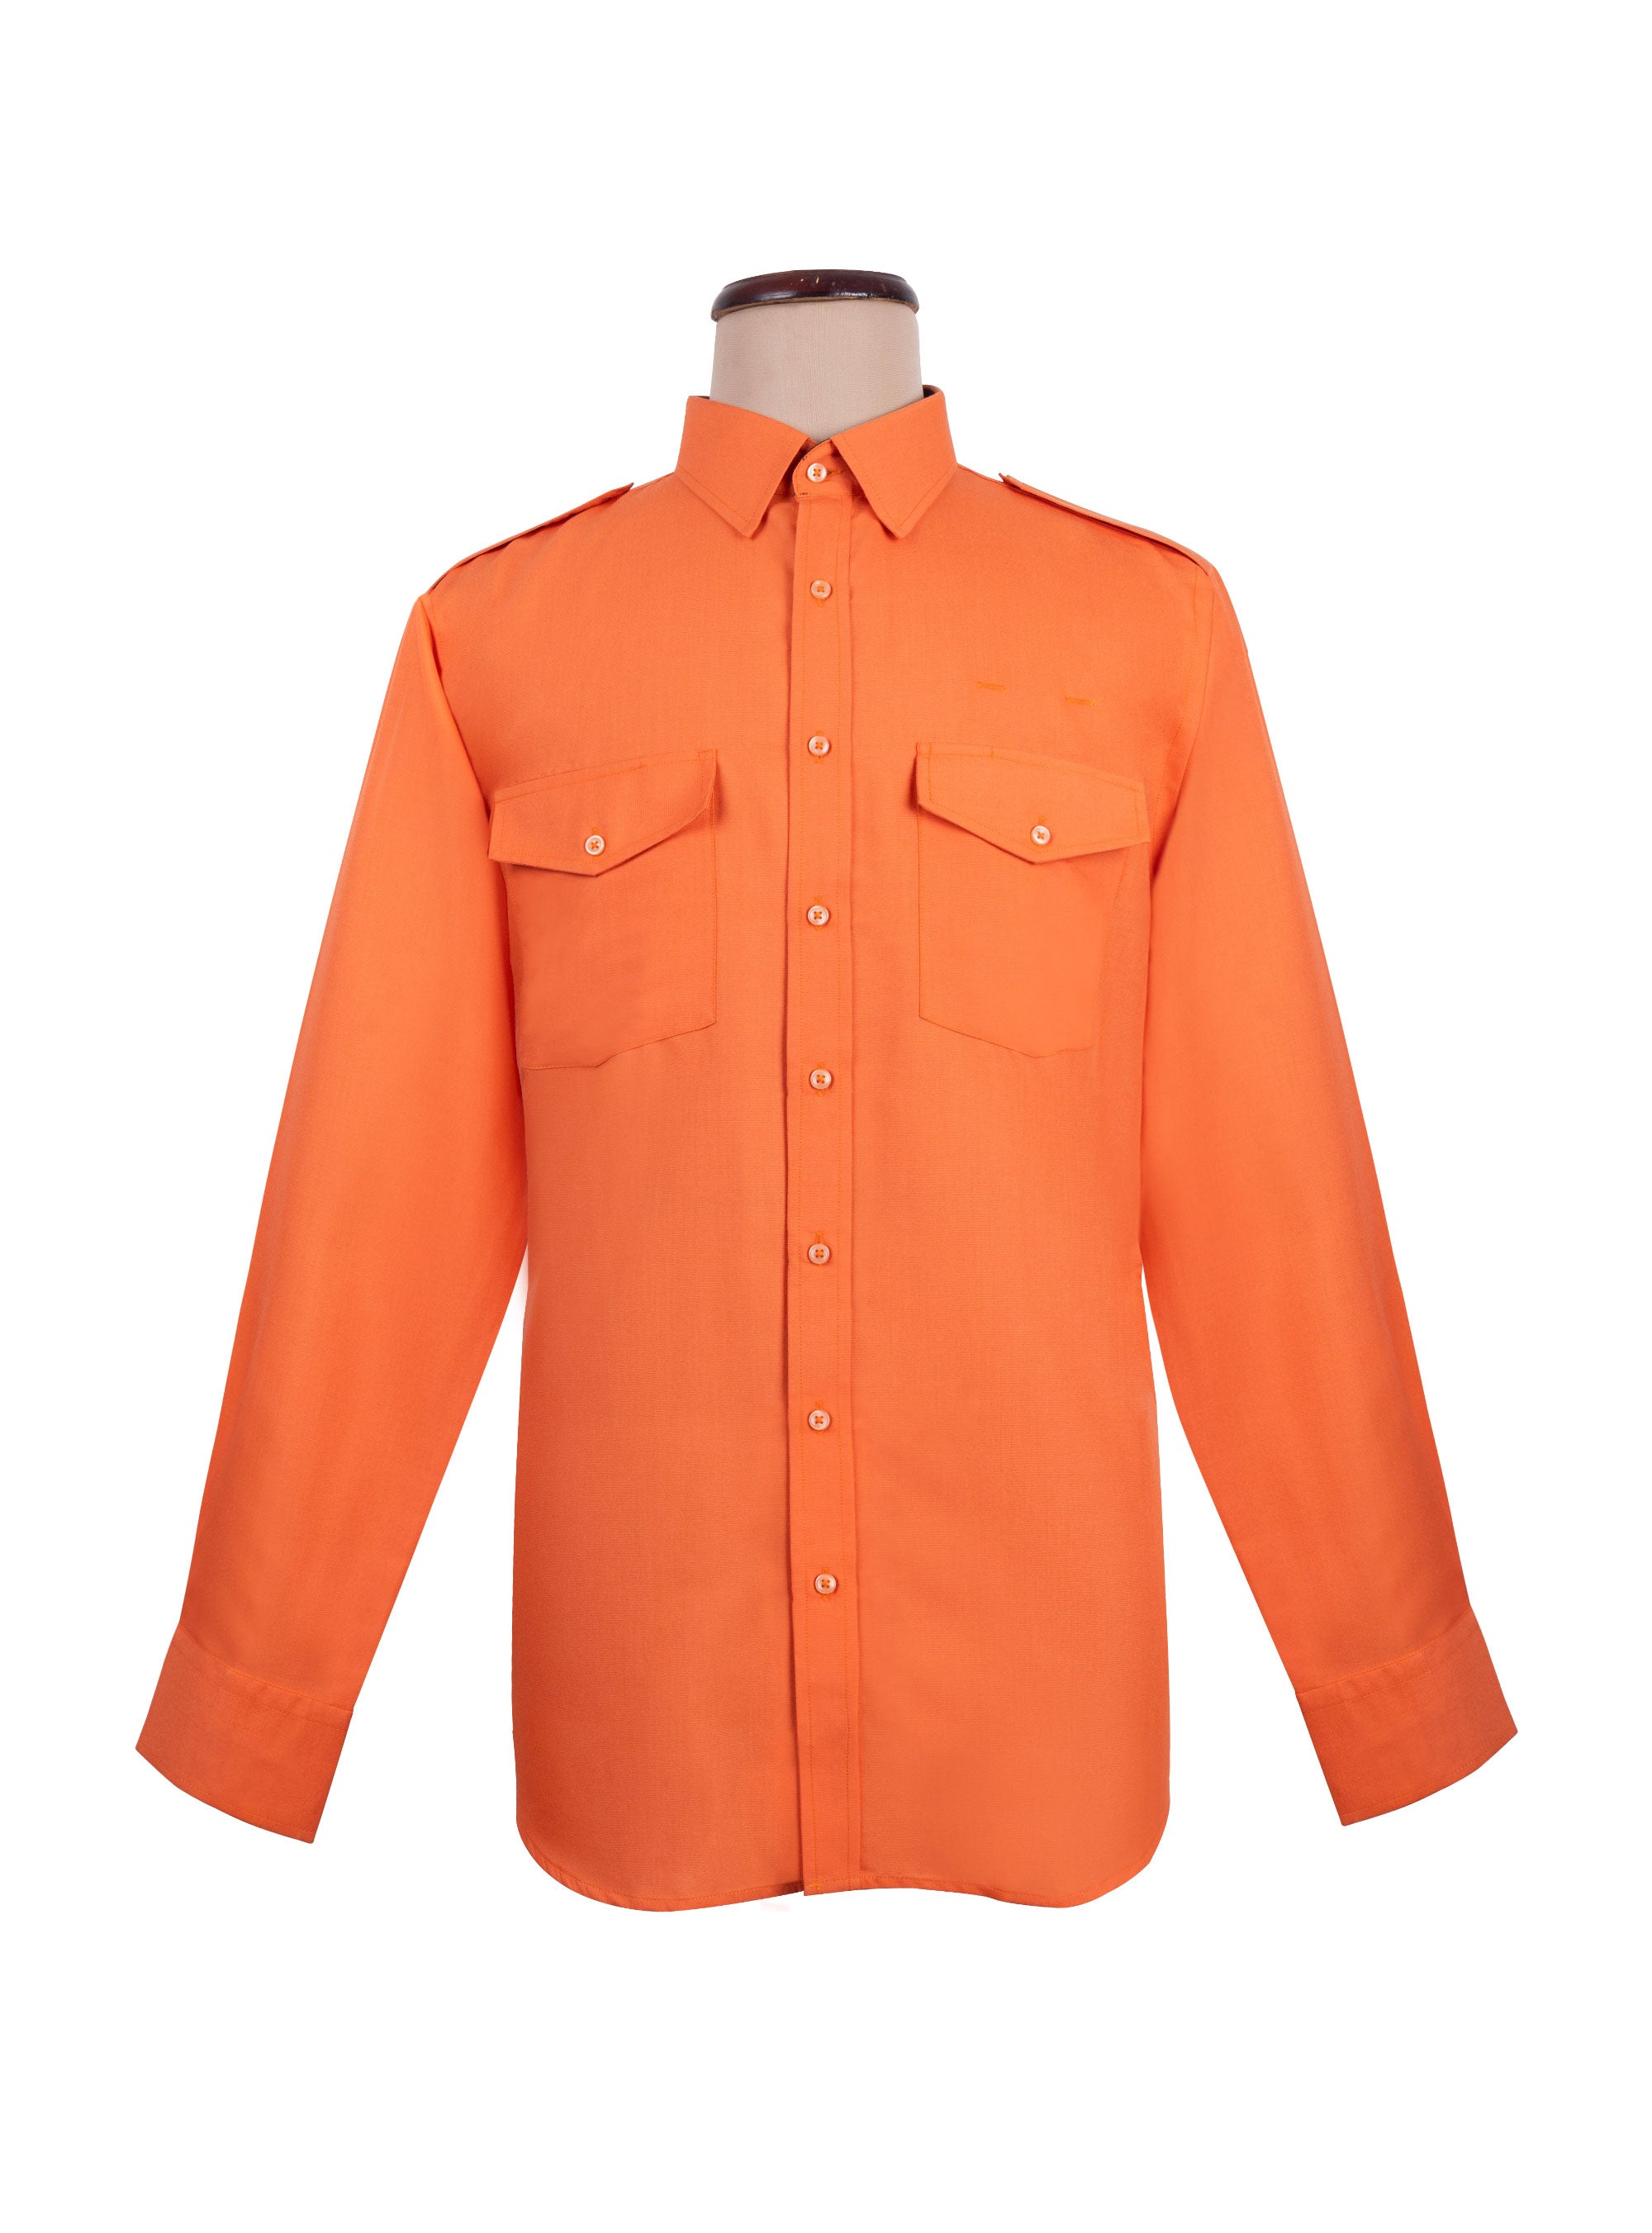 Orange Standard Pilot Shirt Women